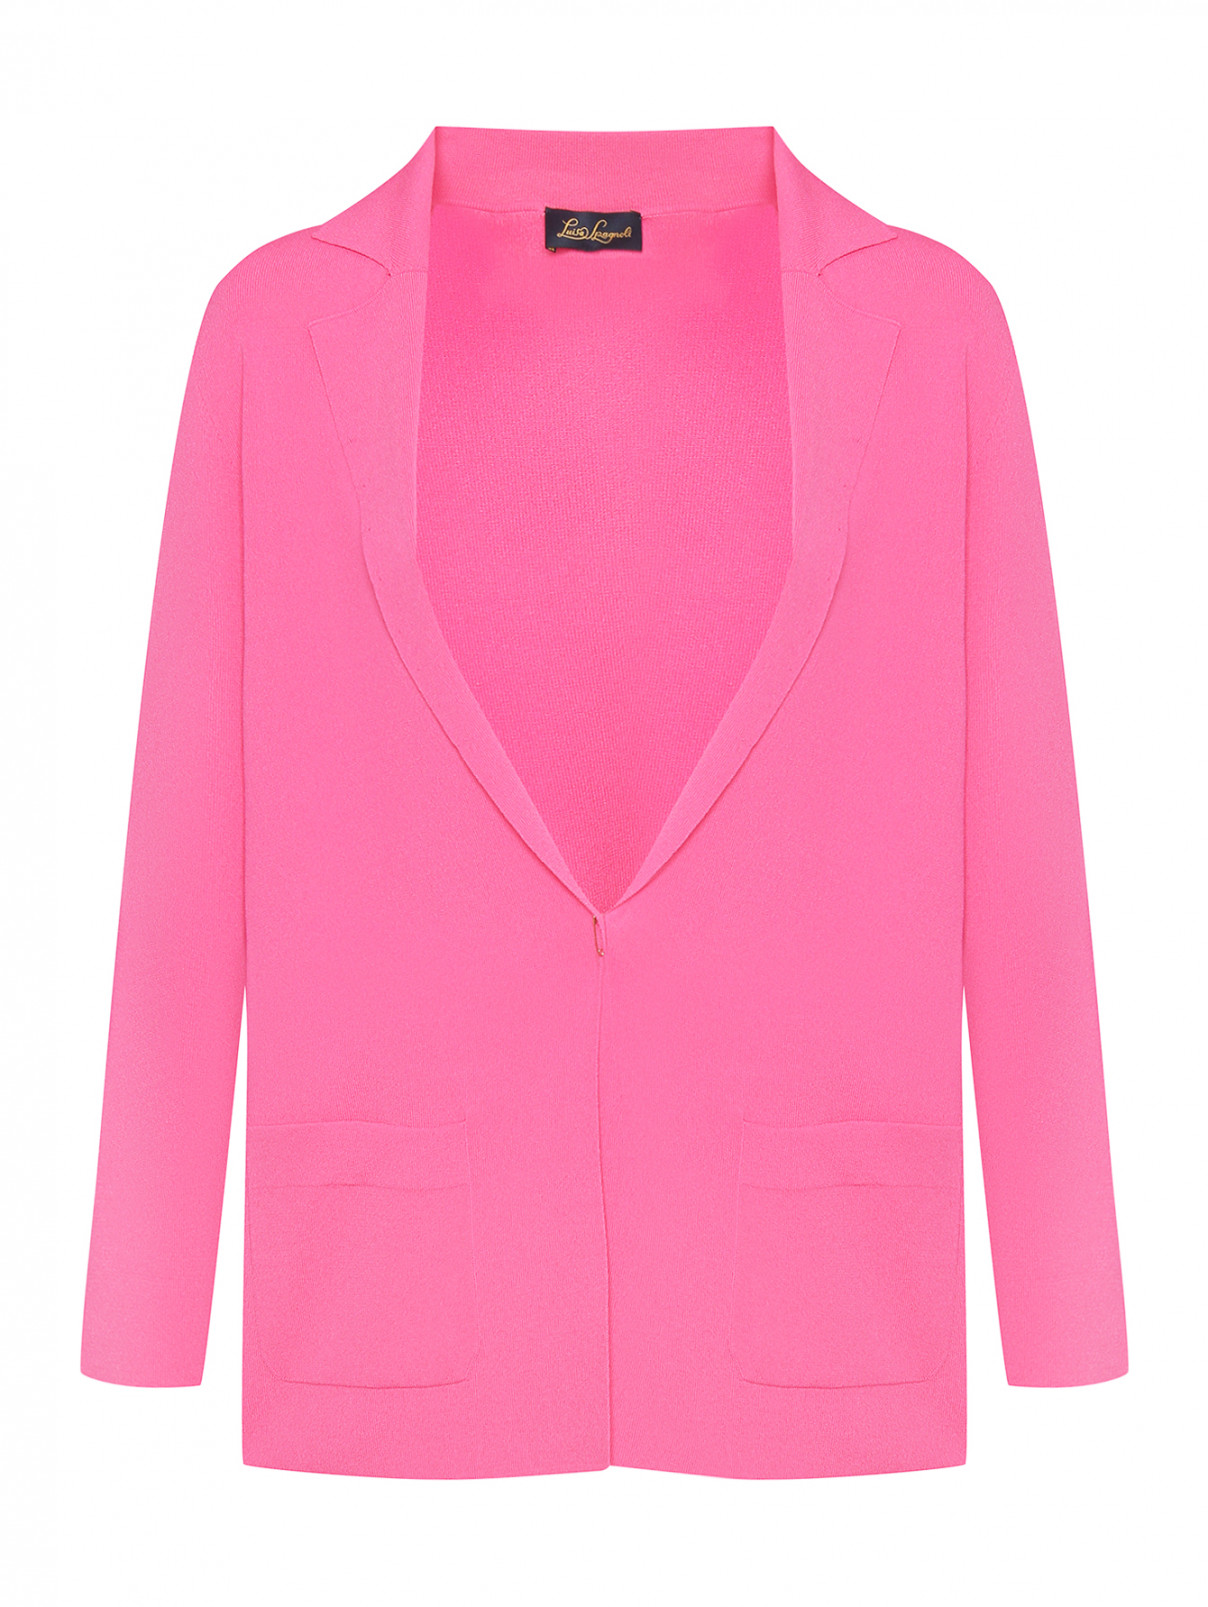 Трикотажный жакет с карманами Luisa Spagnoli  –  Общий вид  – Цвет:  Розовый